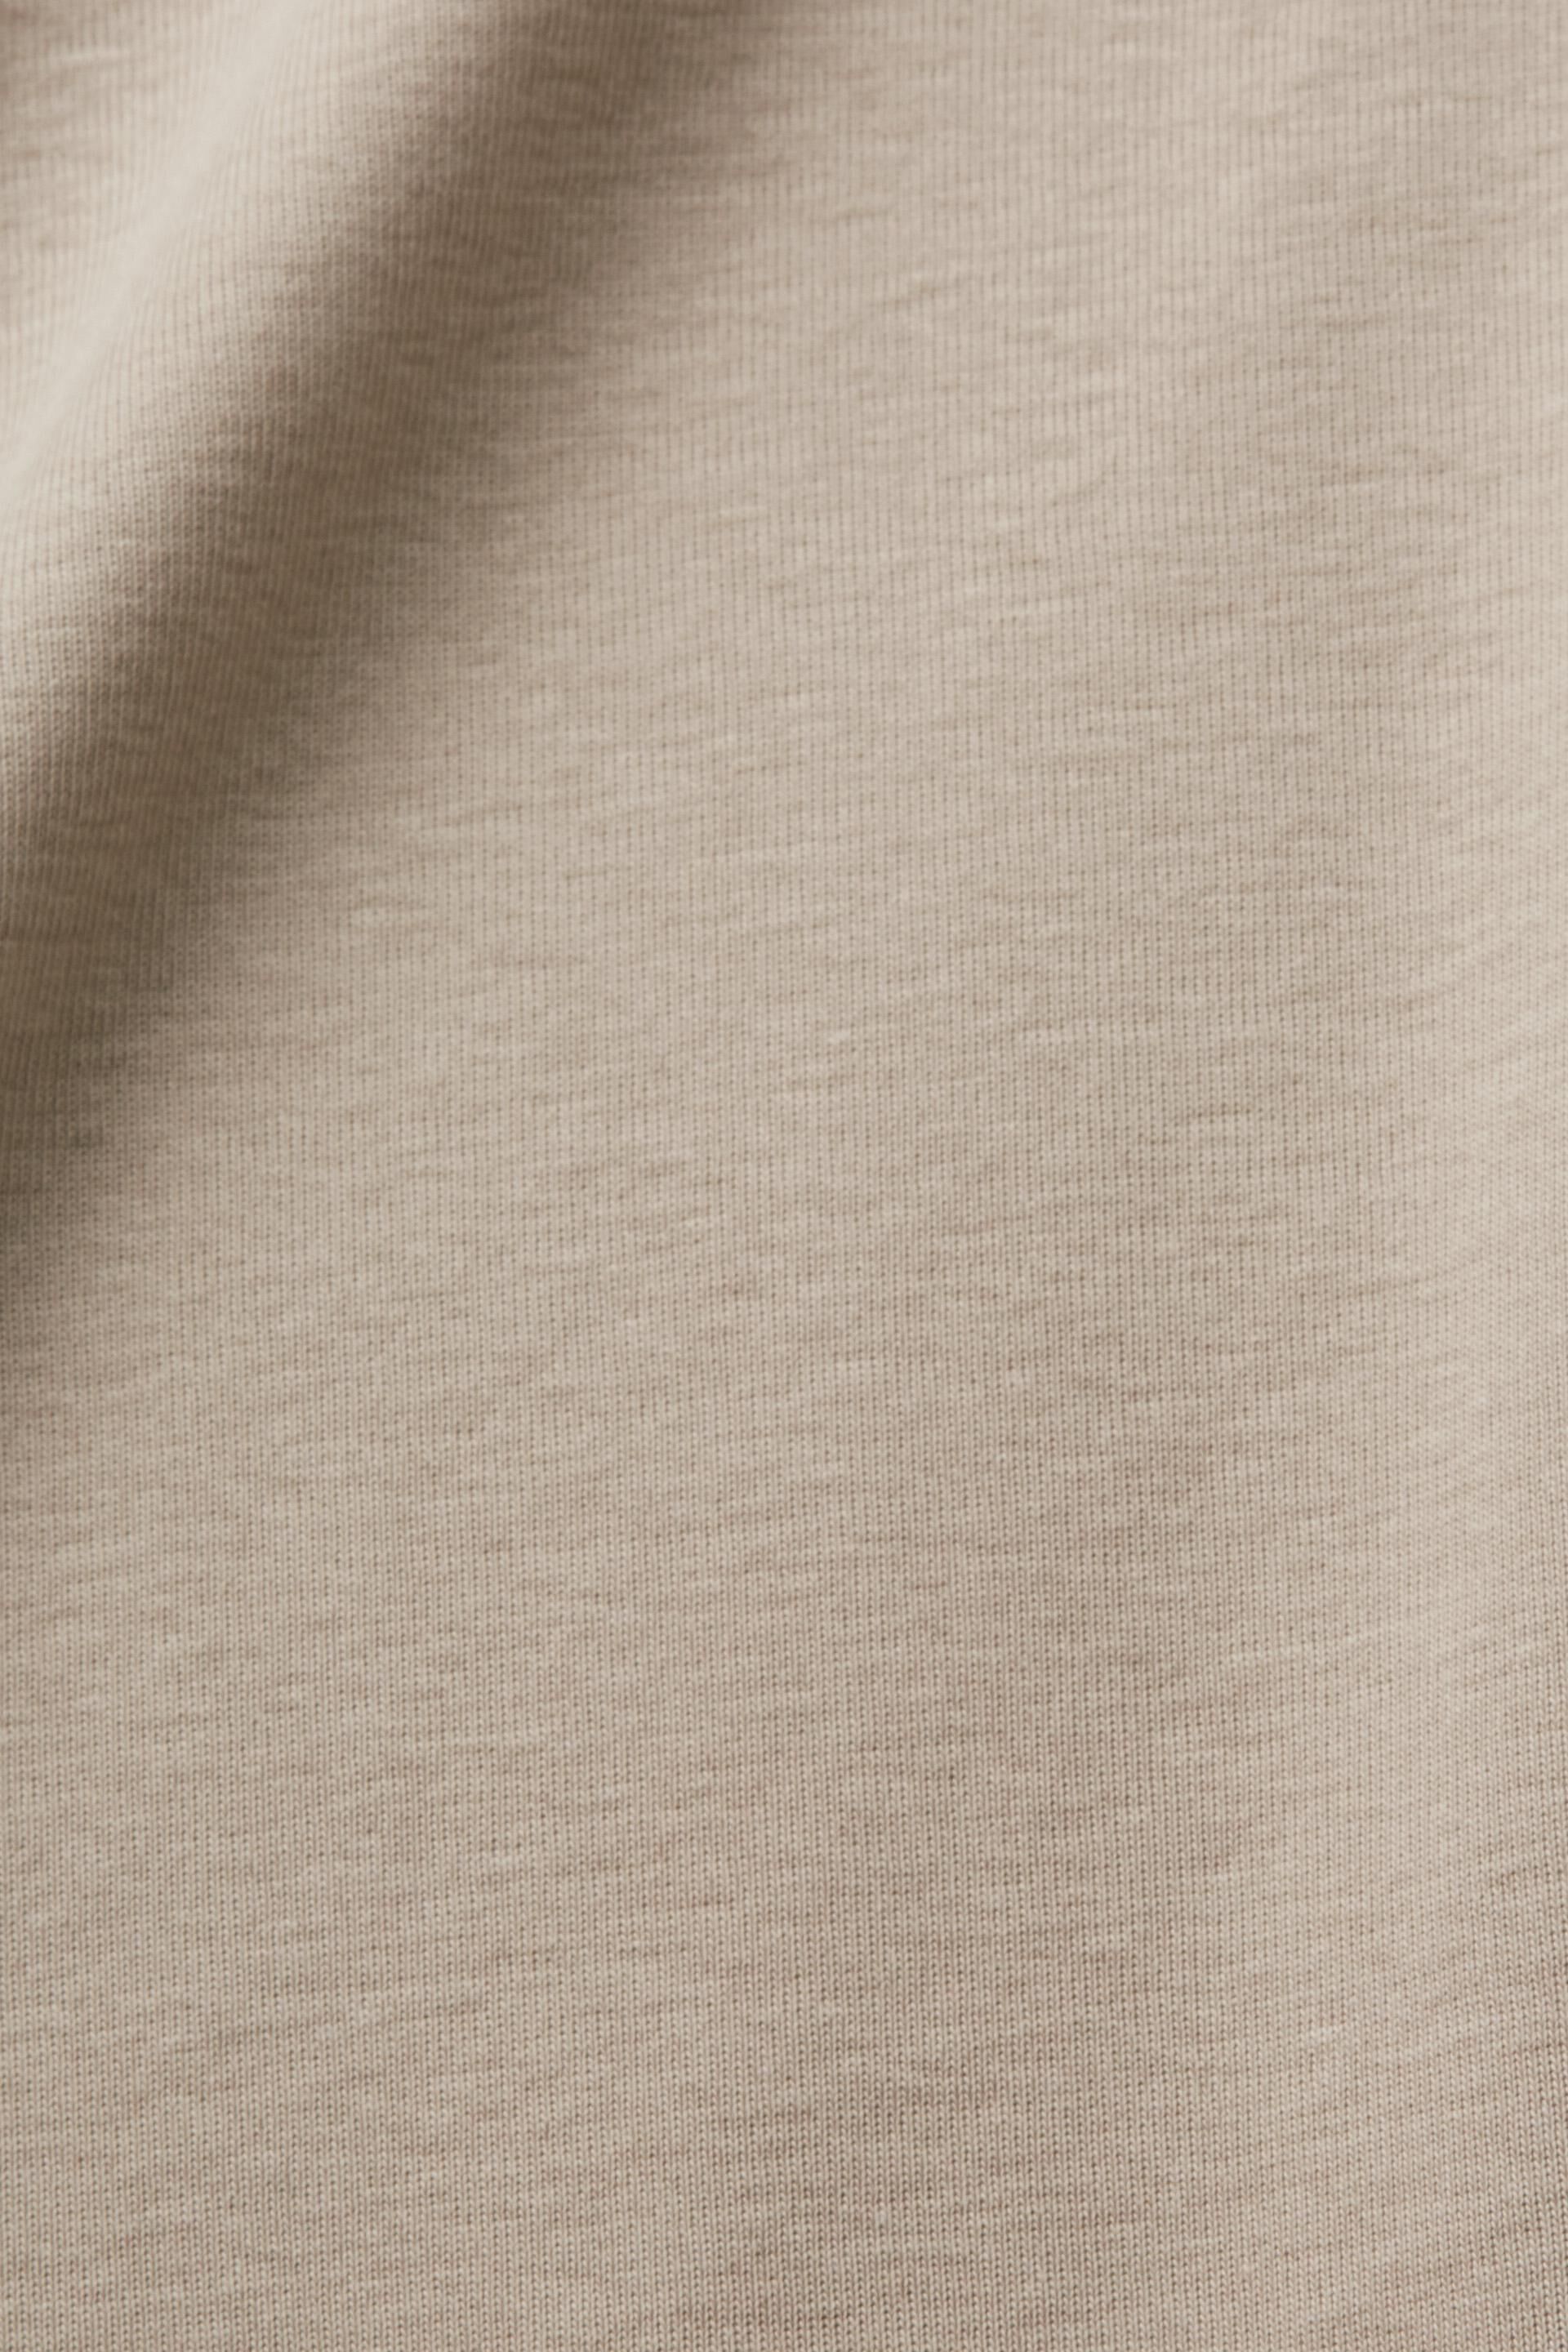 Esprit mit % 100 Baumwolle T-Shirt Rundhalsausschnitt,